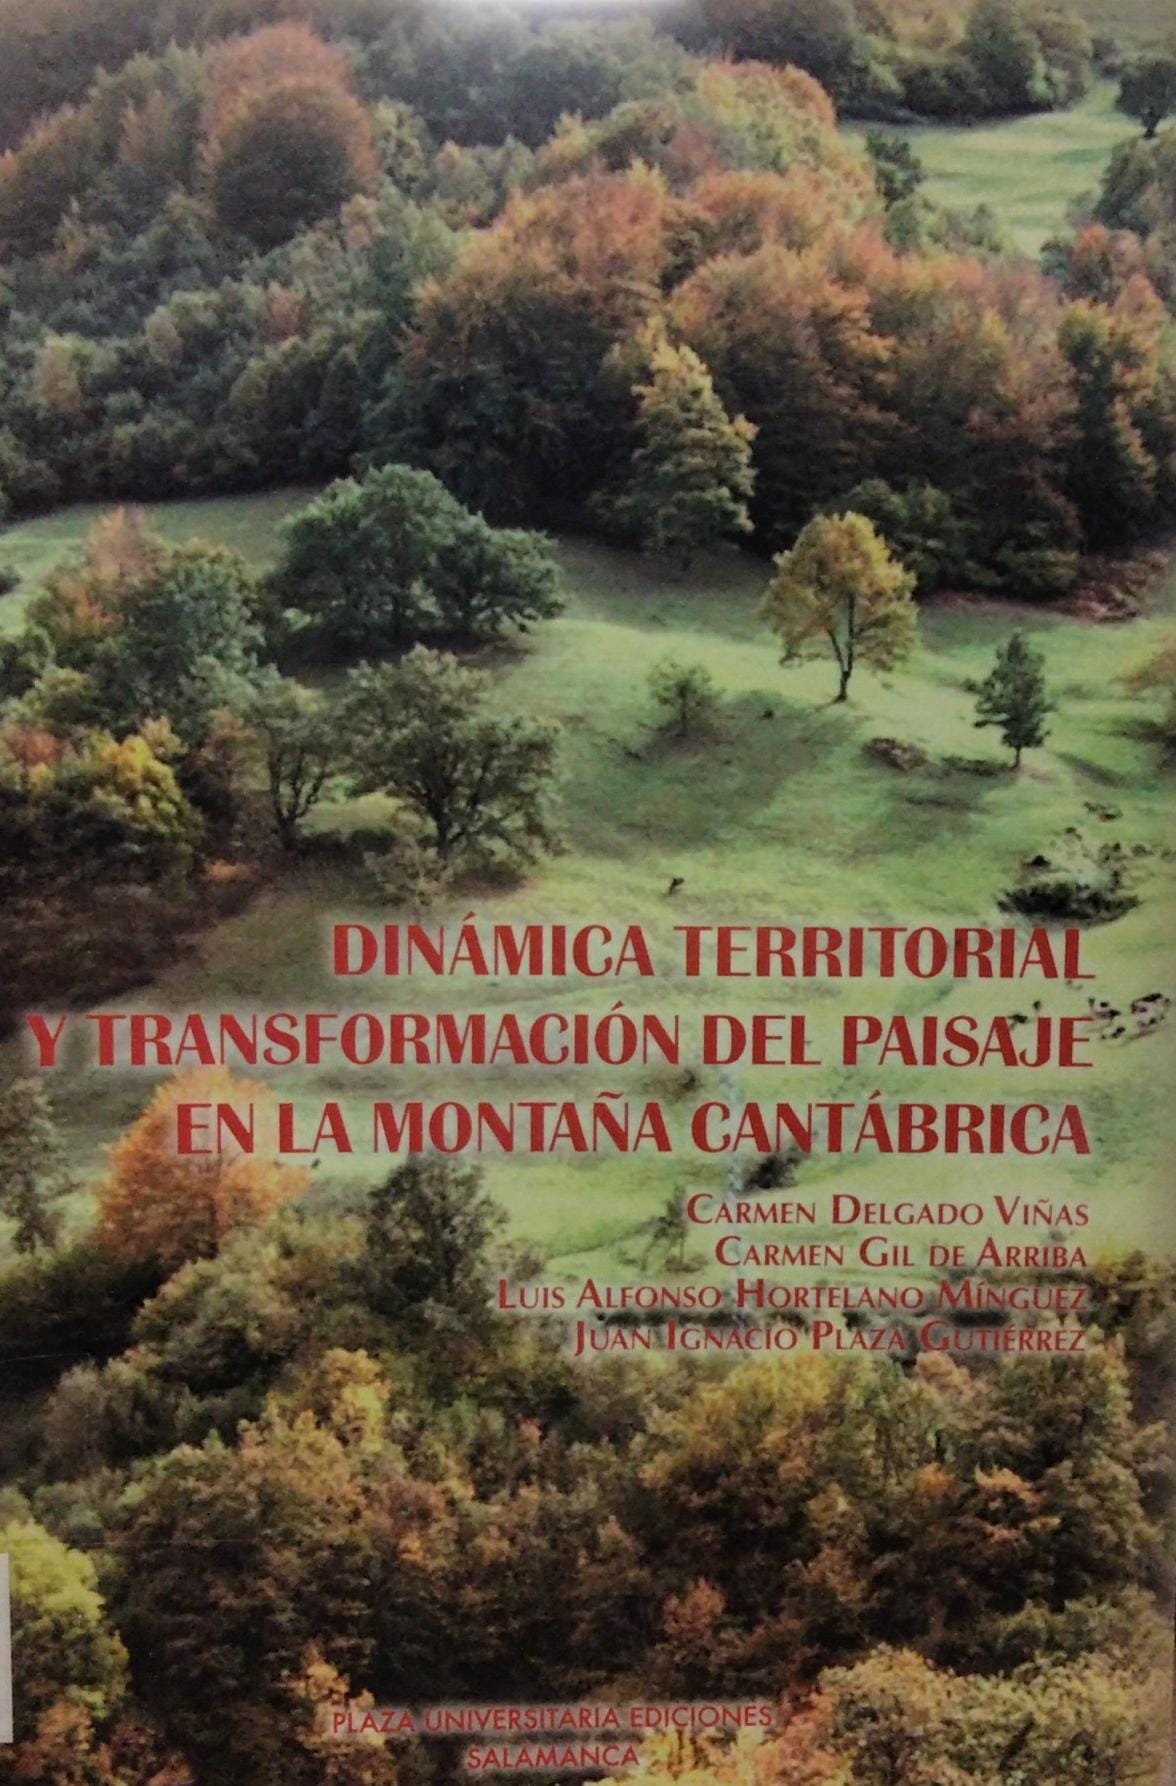 Imagen de portada del libro Dinámica territorial y transformación del paisaje en la montaña cantábrica